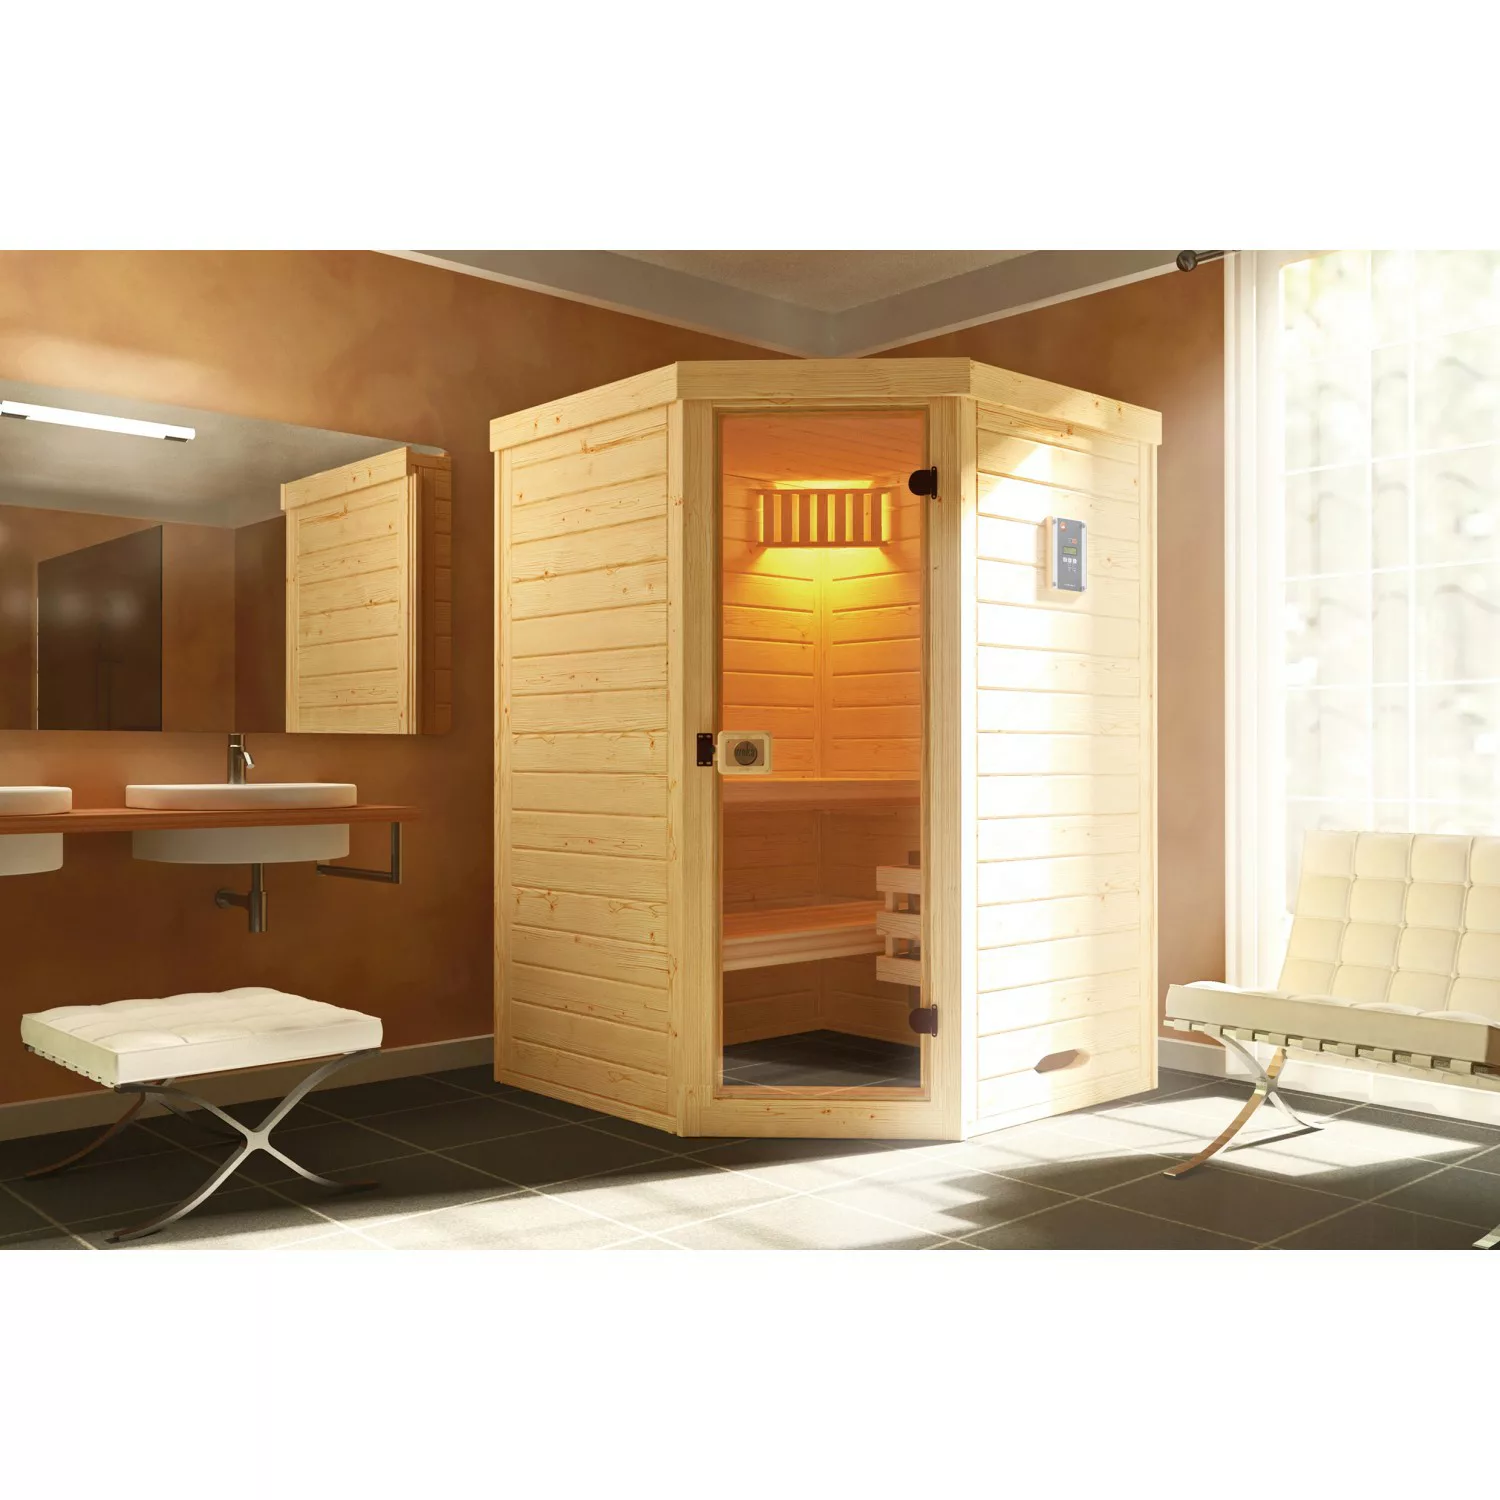 Weka Sauna 38 mm Laukkala 1 inkl. Saunaleuchten-Set, Glastür günstig online kaufen